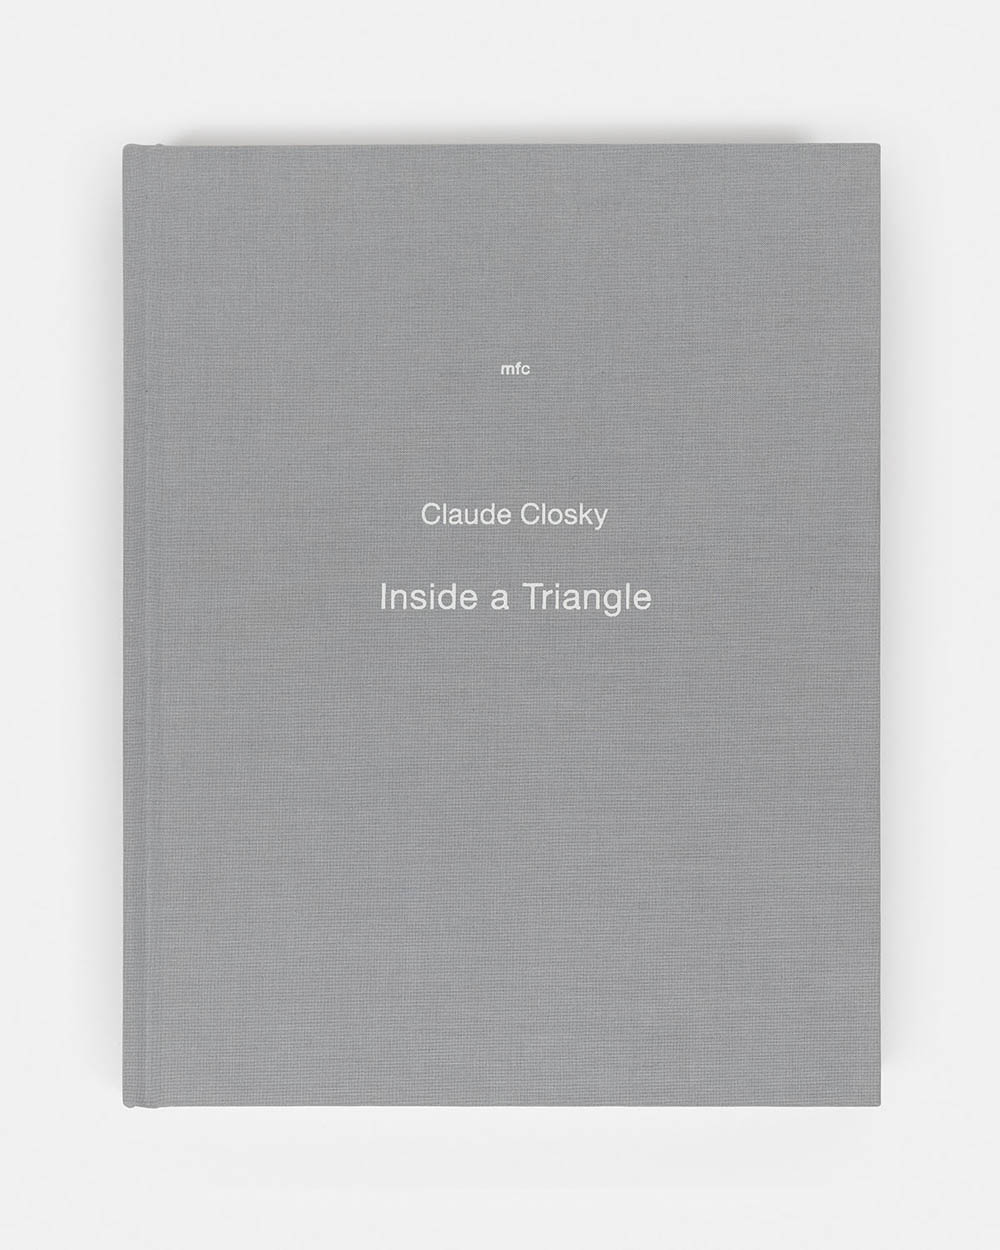 Claude Closky - Inside a Triangle, 2011 - 